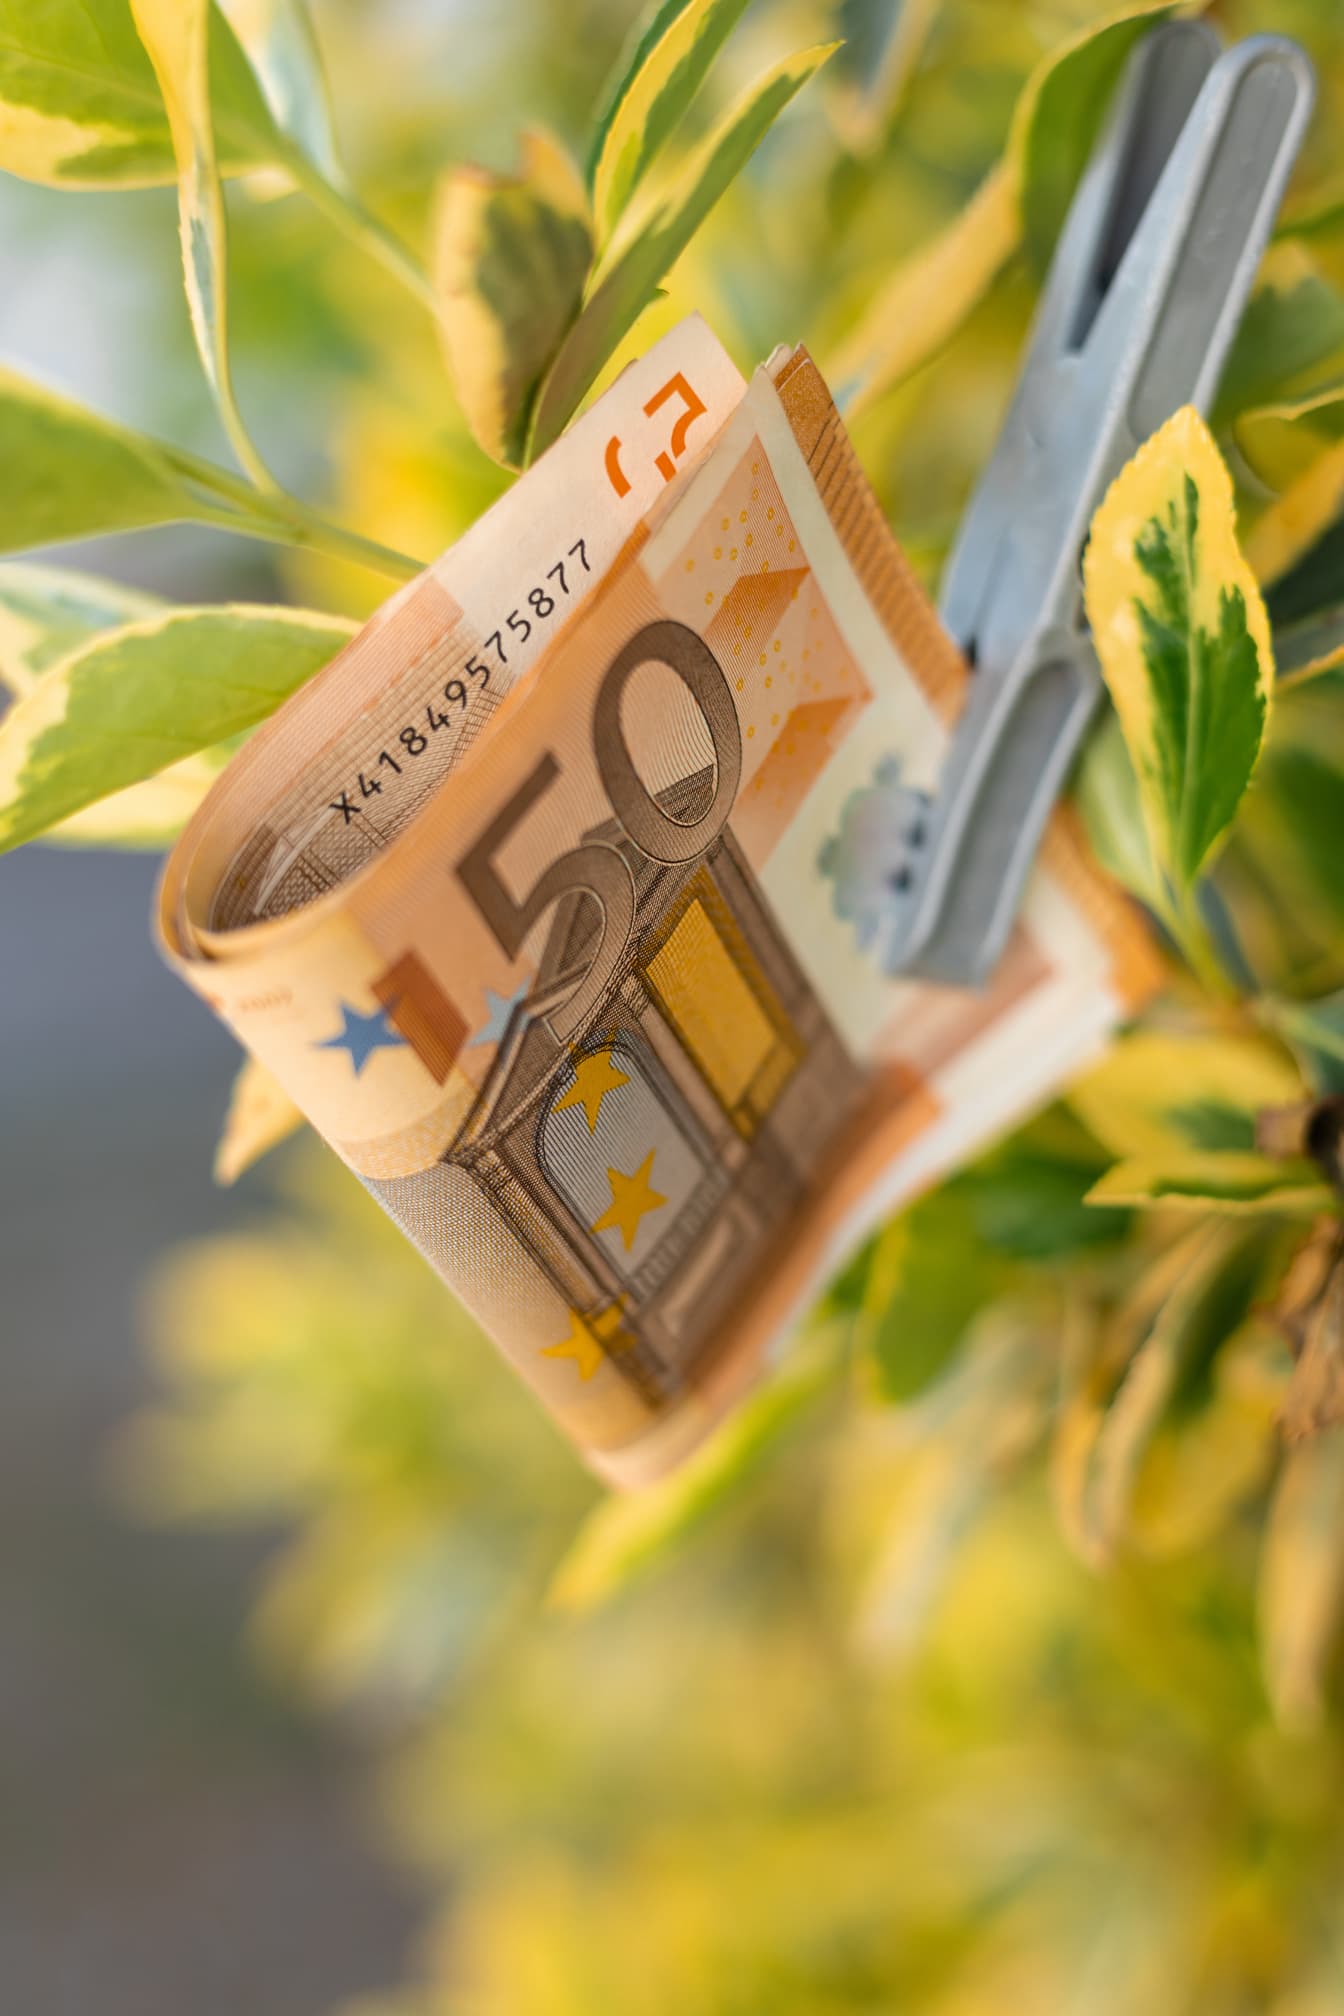 50 Euro bani pe frunze galben-verzui cu agrafă de plastic